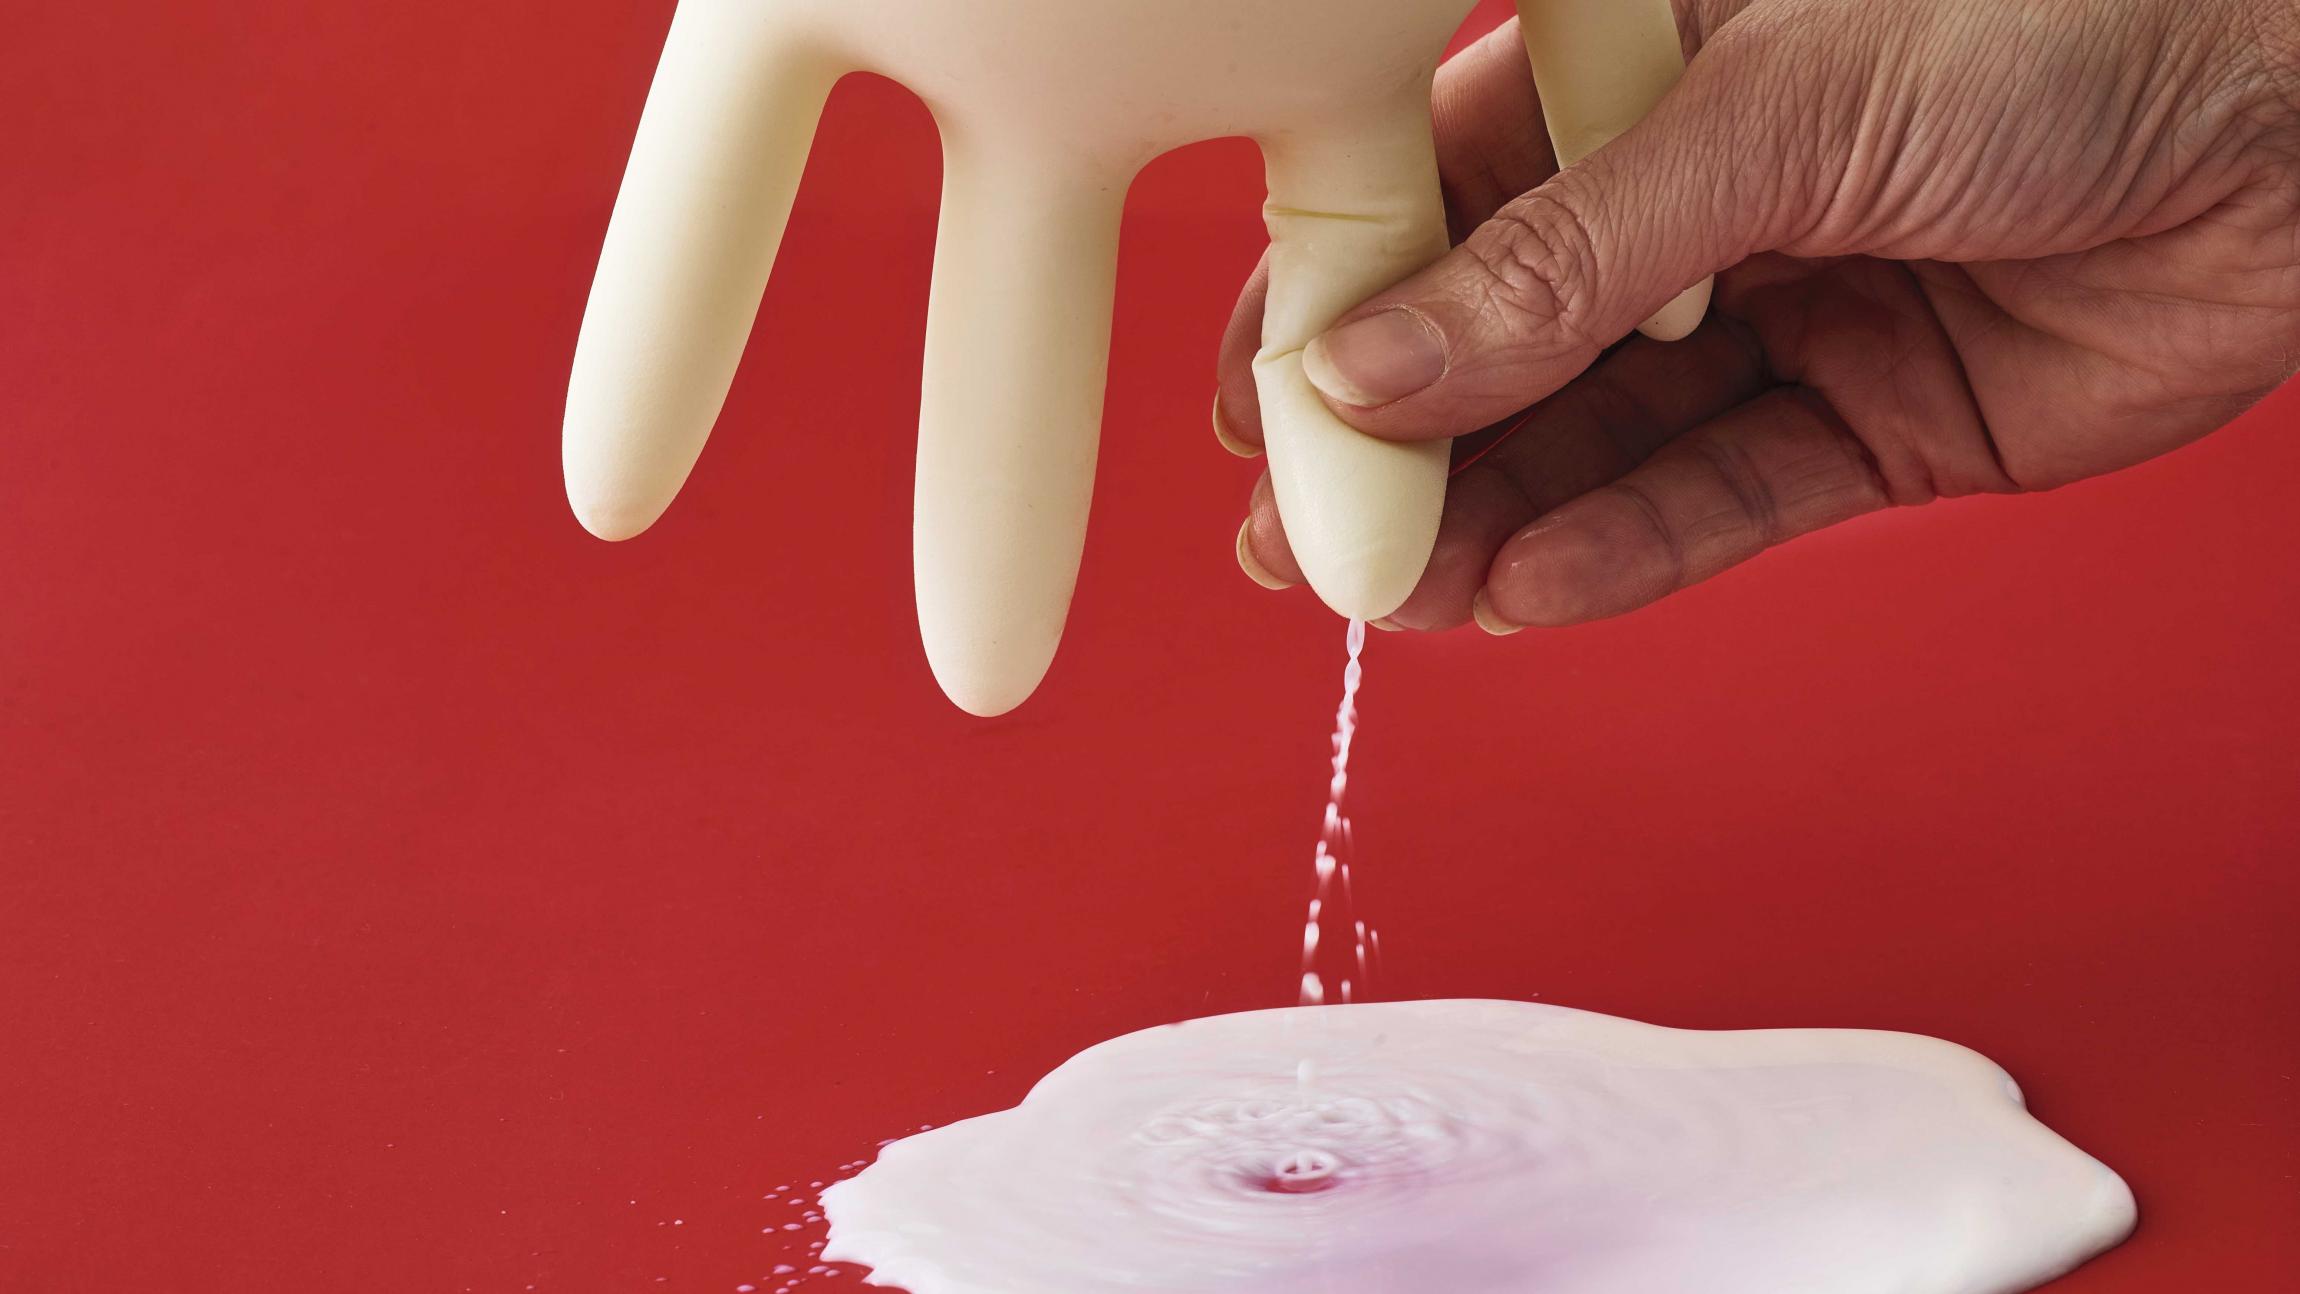 Mælk i en plastikhandske bliver malket ud af hånd